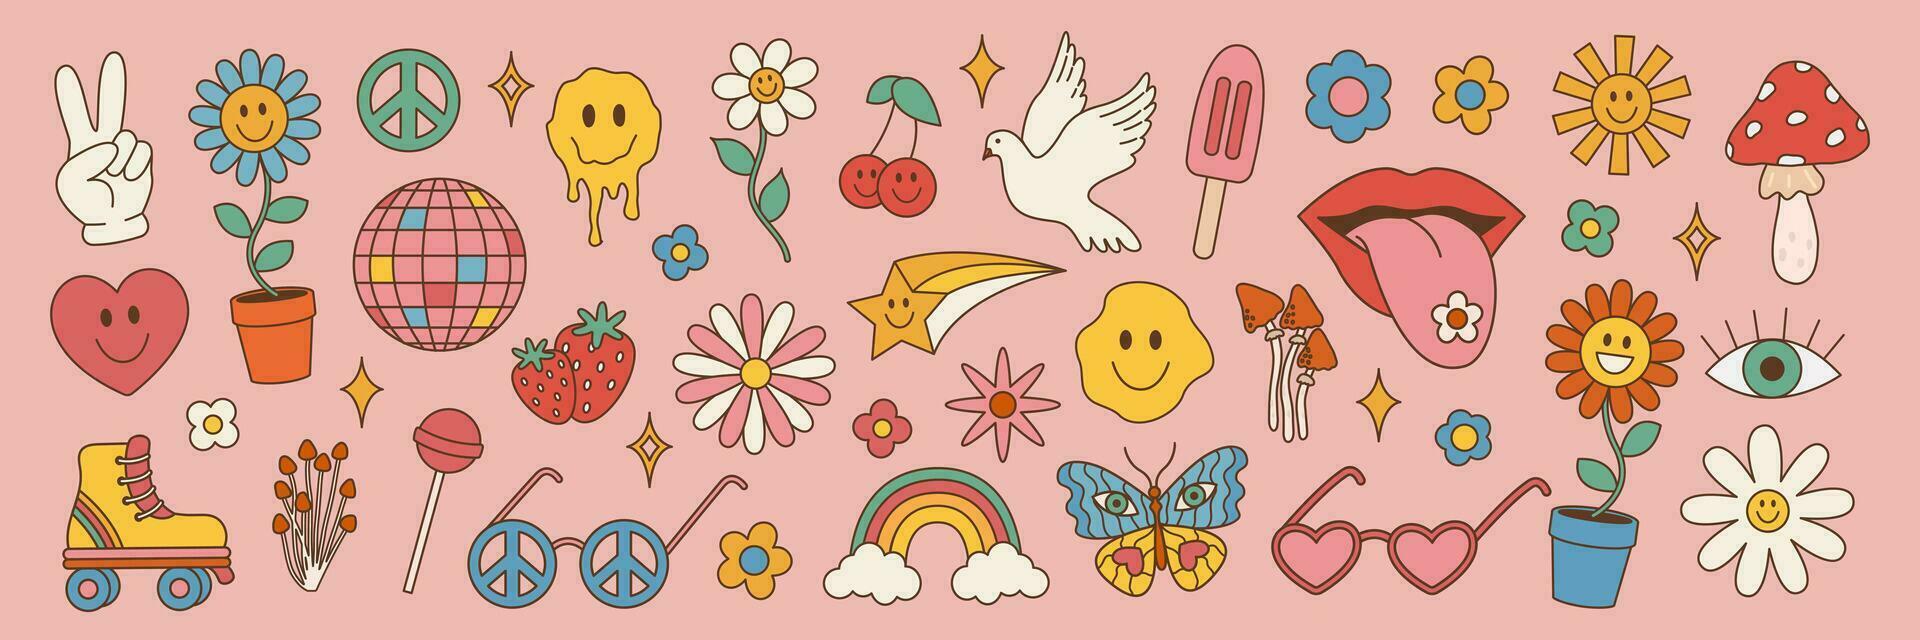 Groovy hippie impostato di 70s anni 80 elementi. vettore illustrazione nel Vintage ▾ stile, fiore, arcobaleno, cuore, fungo